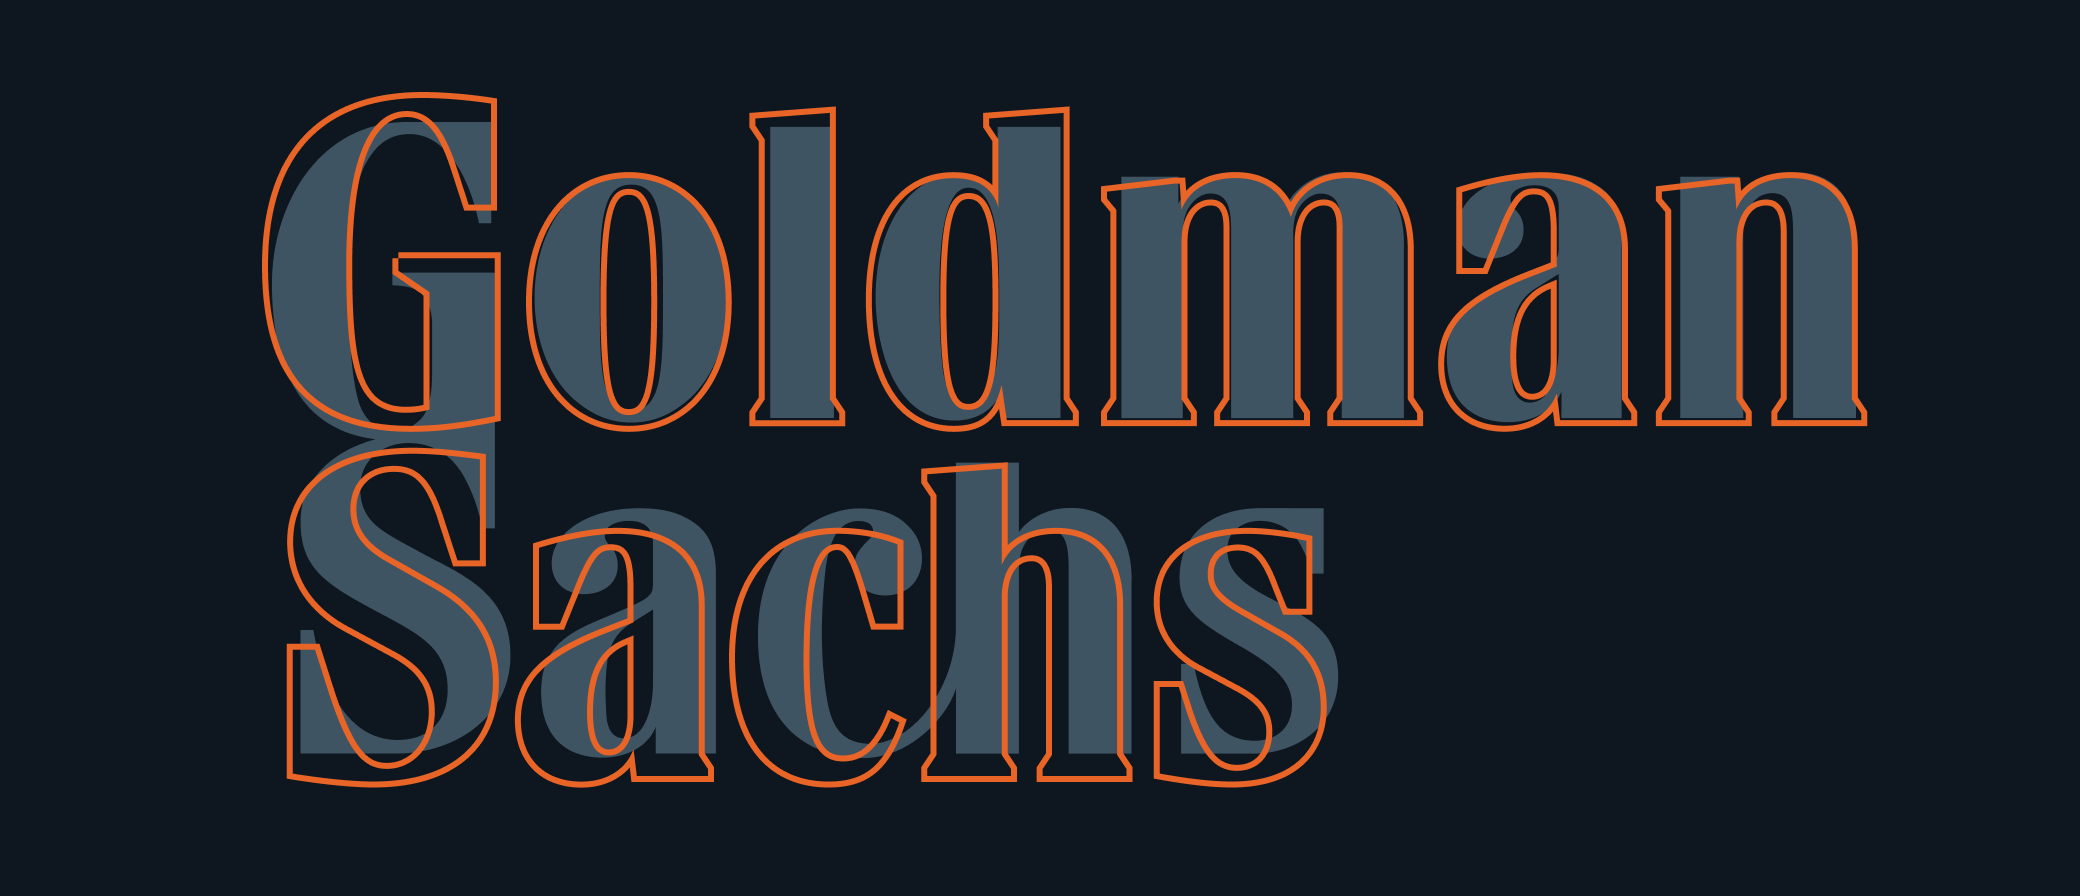 Goldman Sachs art